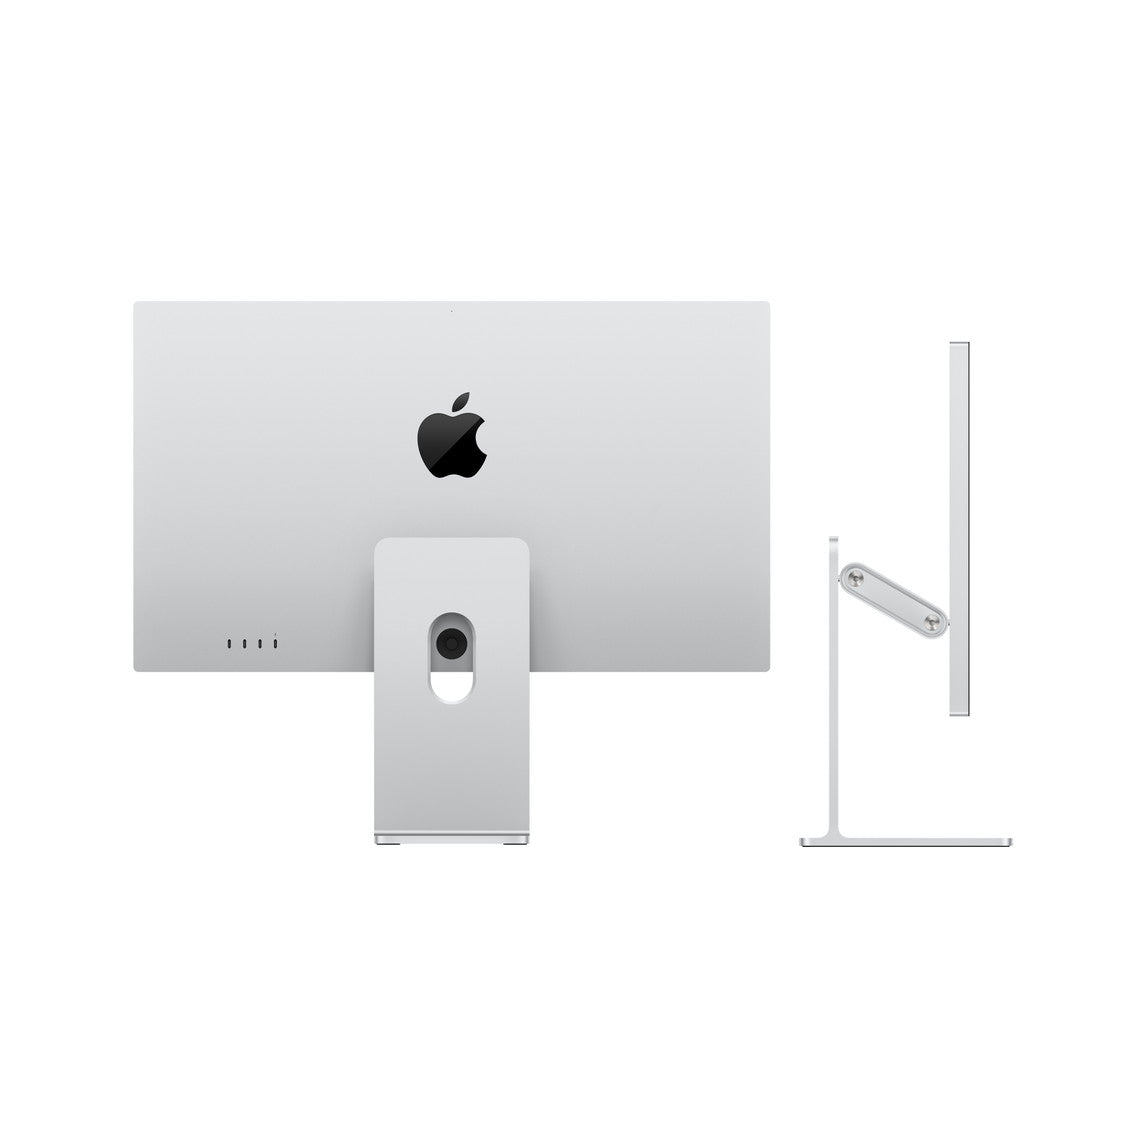 Apple Studio Display - Nano-Texture Glass - Tilt- and Height-Adjustable Stand